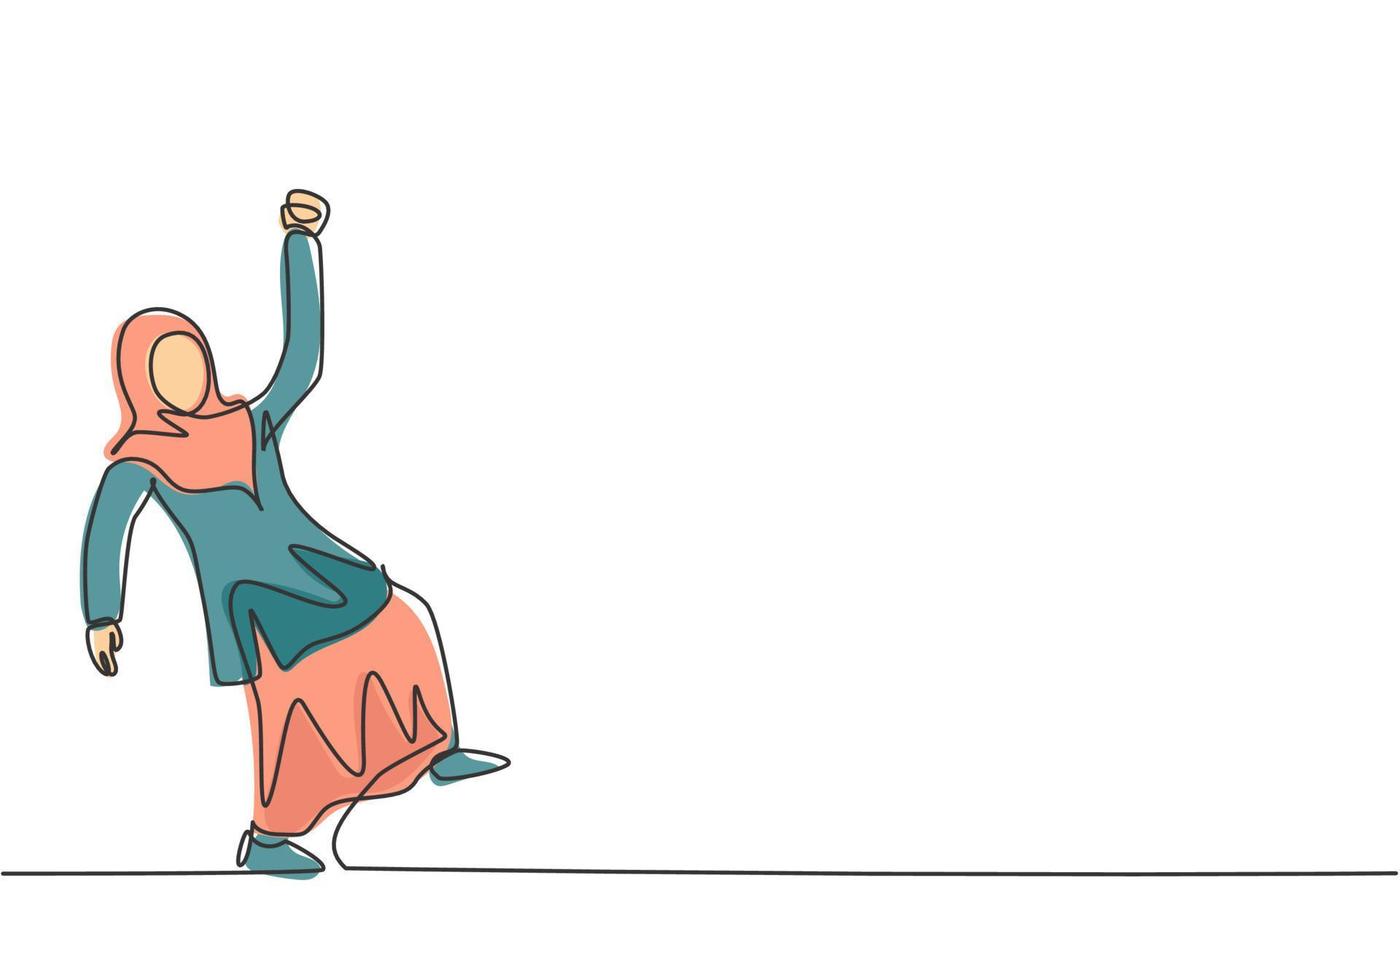 dibujo de línea continua única joven mujer de negocios árabe bailando en la calle. trabajador feliz celebrar su logro. concepto de metáfora del minimalismo. Ilustración de vector de diseño gráfico de dibujo de una línea.